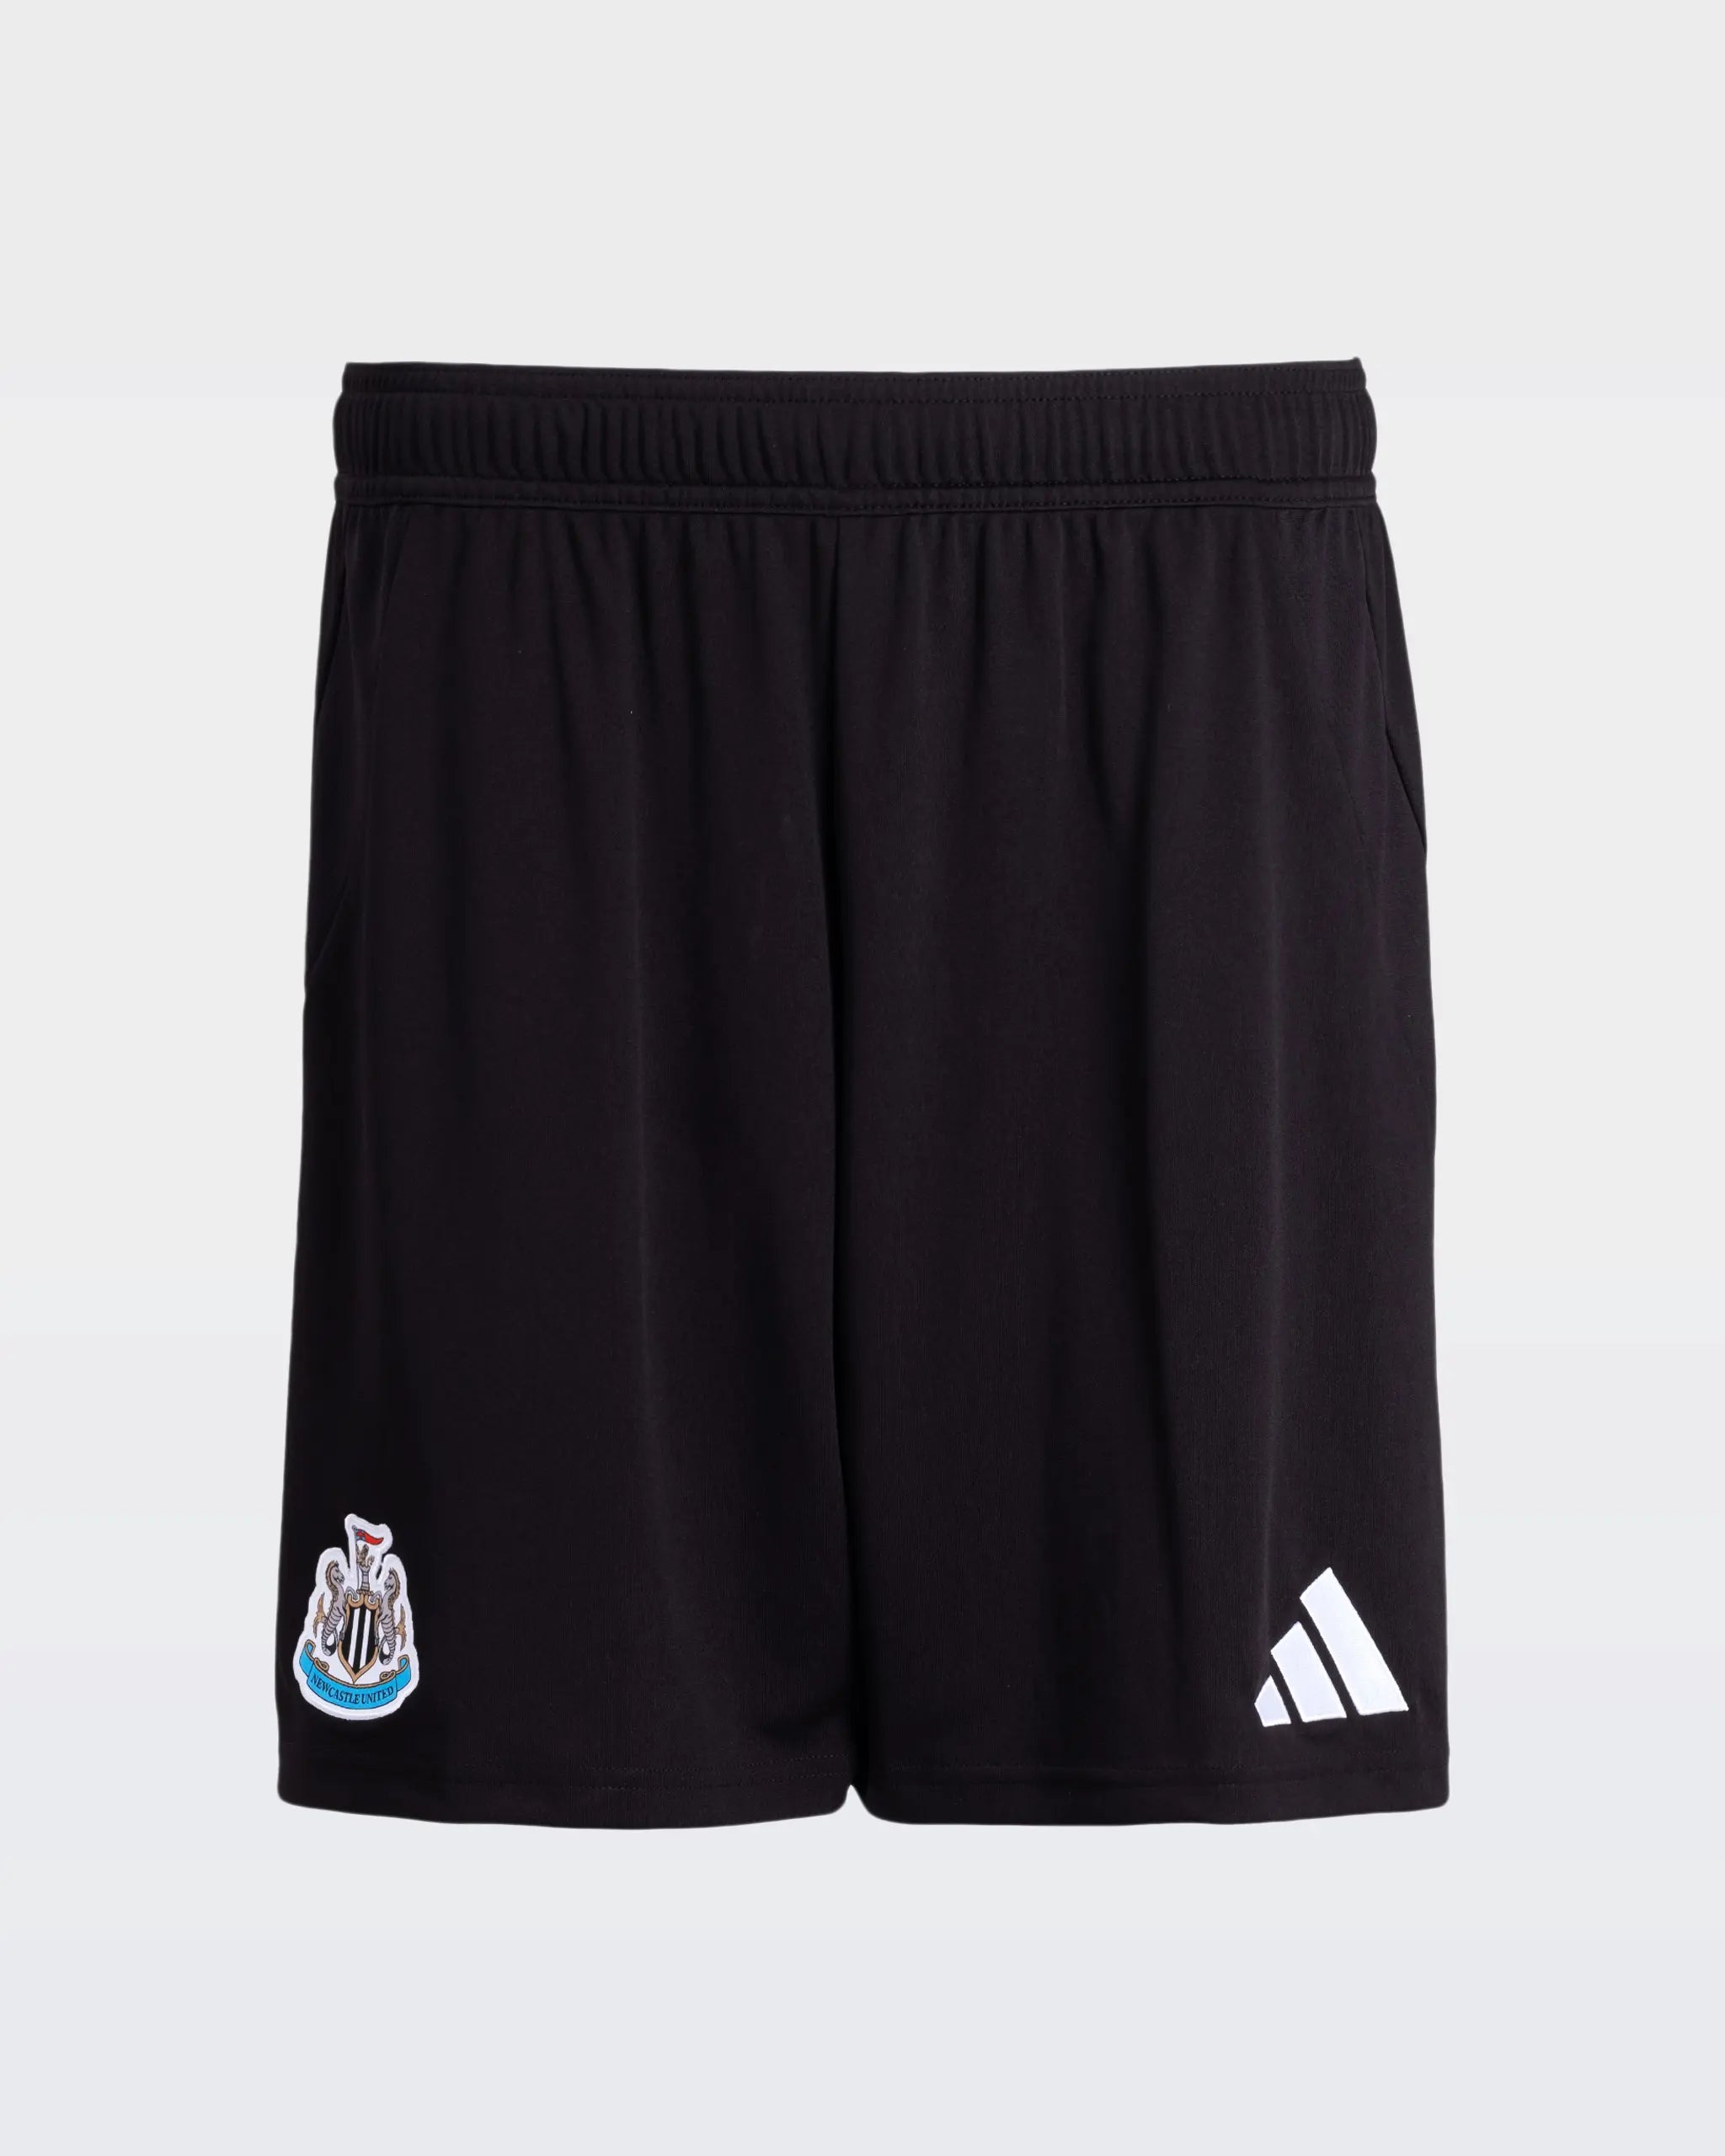 Newcastle United adidas 24/25 Home Shorts